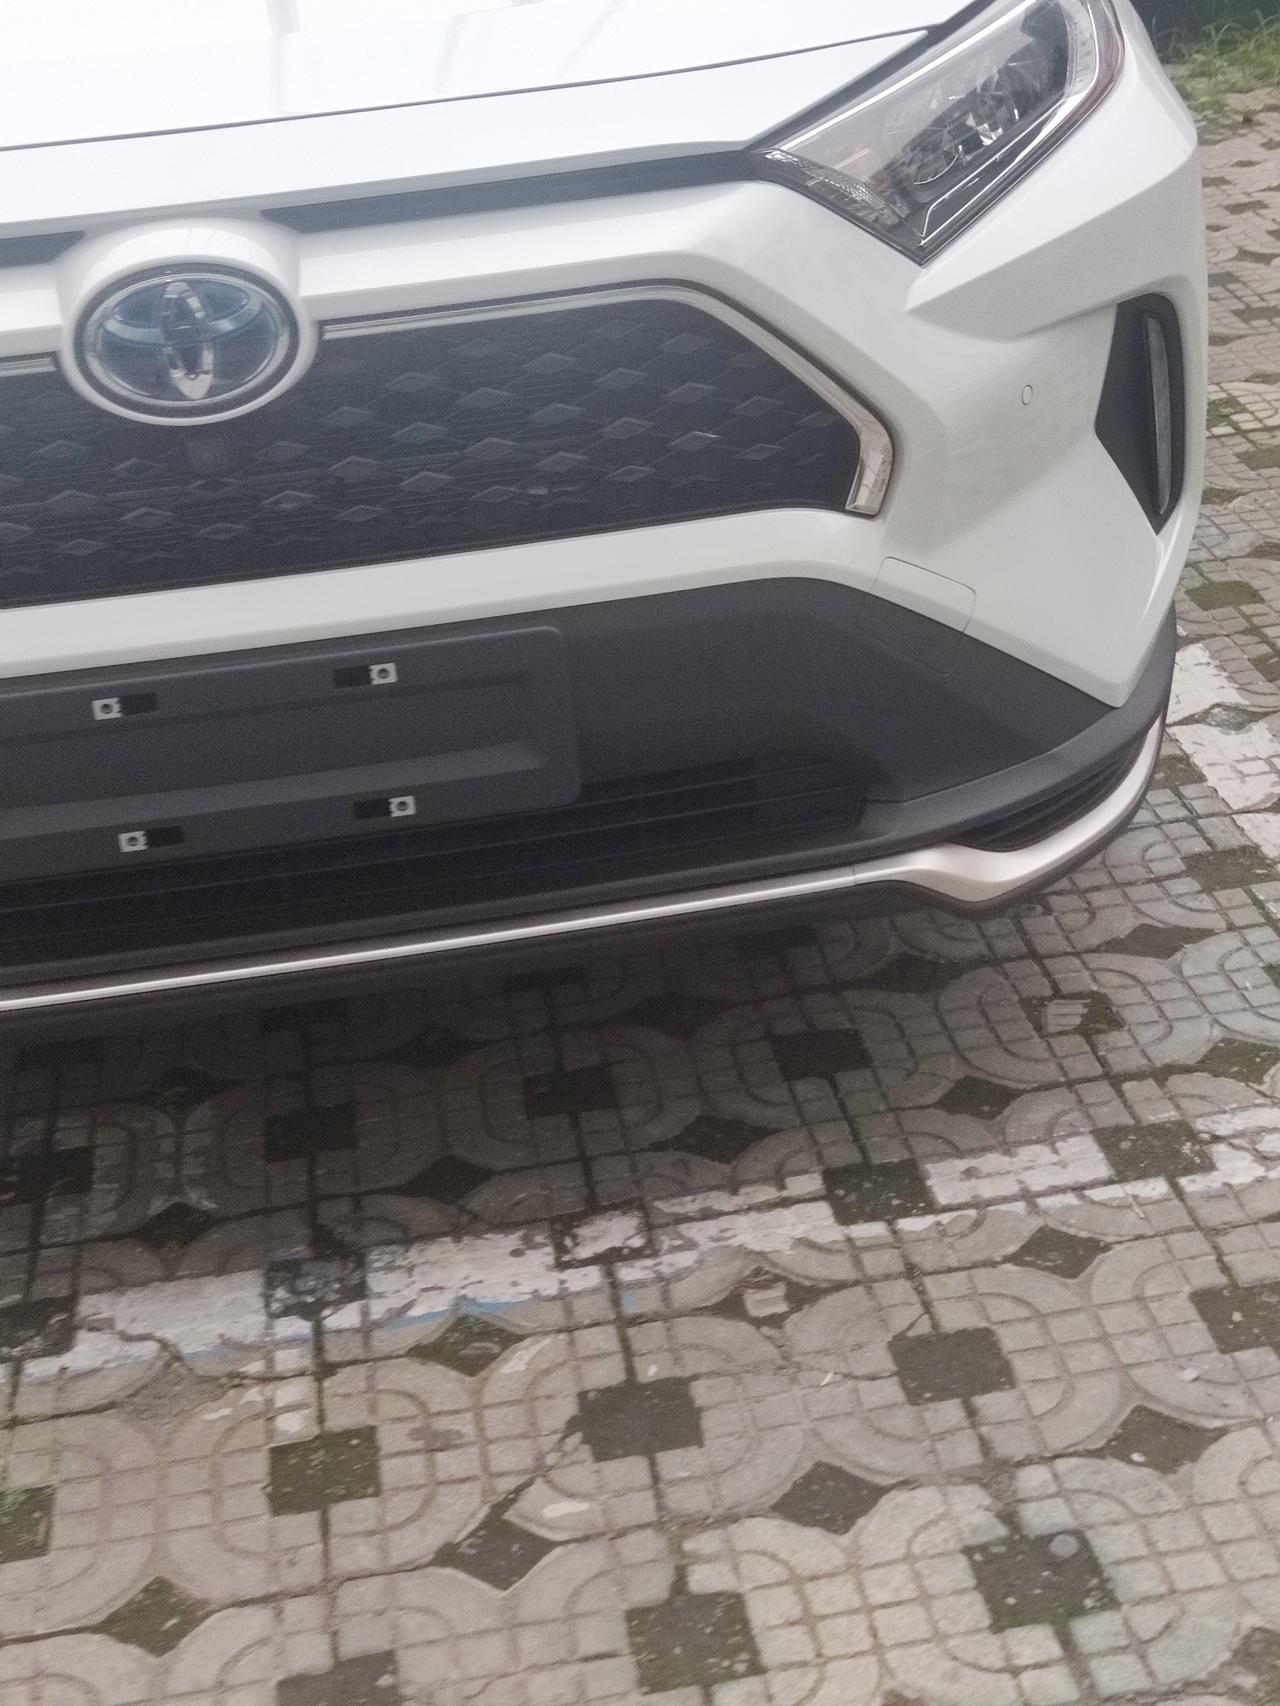 丰田RAV4荣放 4s店看到的新车，这是新款吗？怎么轮毂和中网，雾灯不一样了？